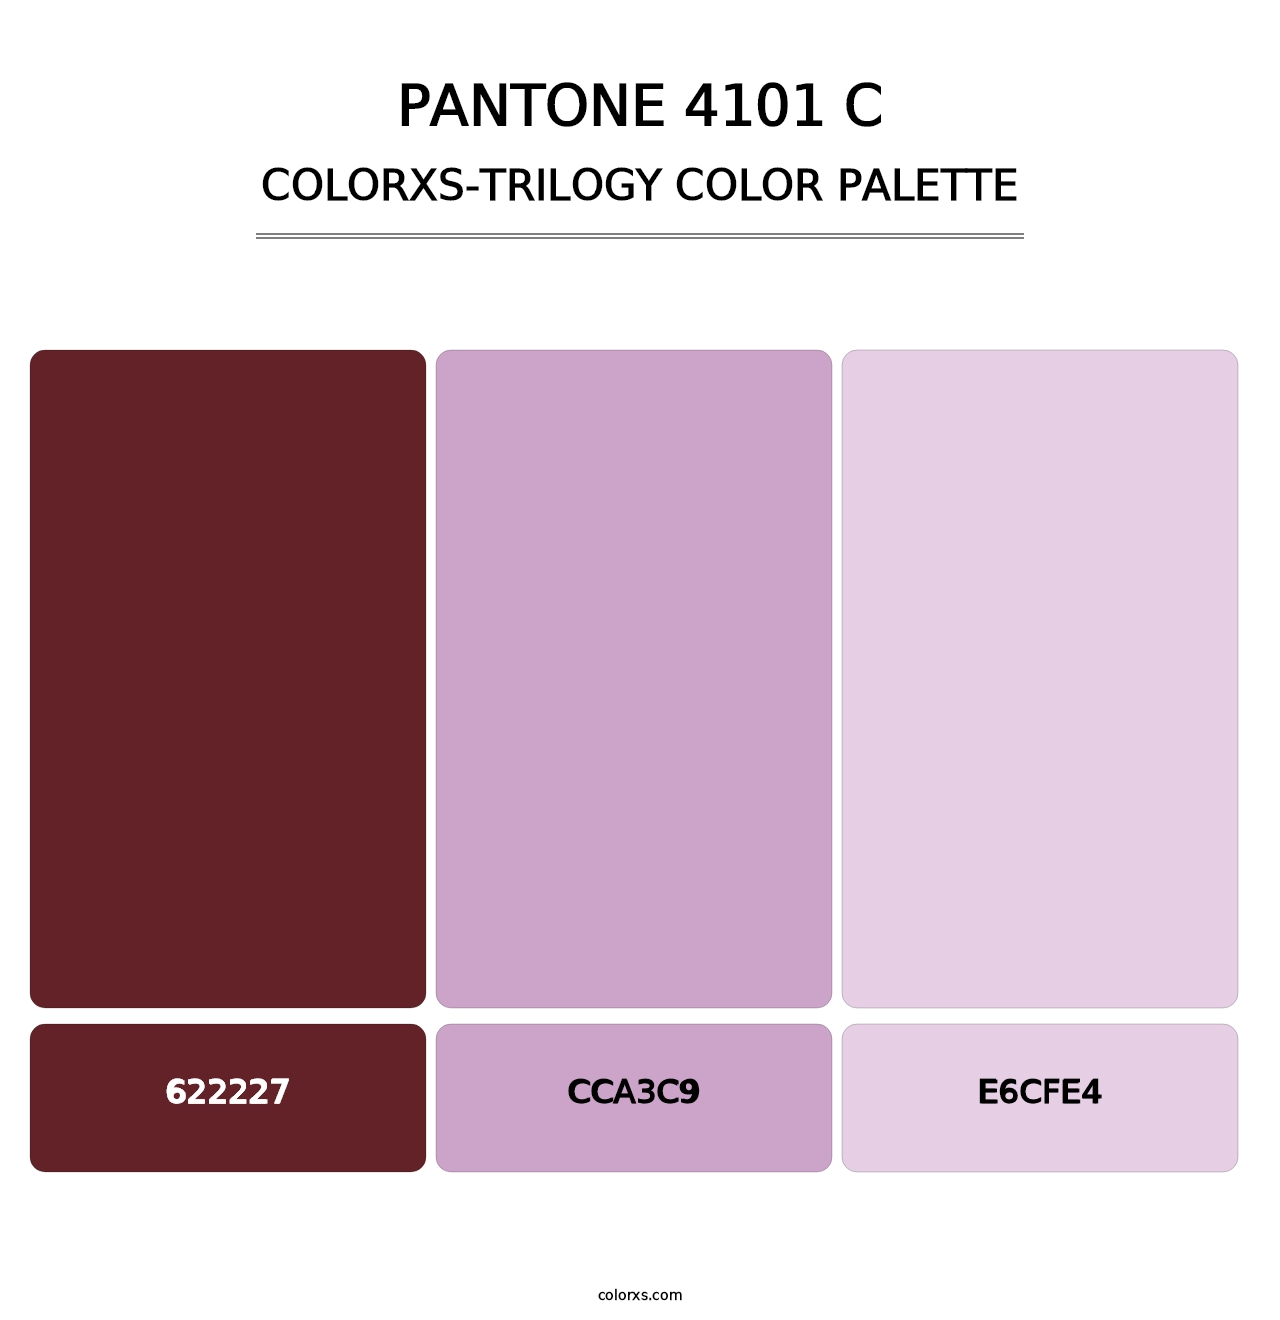 PANTONE 4101 C - Colorxs Trilogy Palette